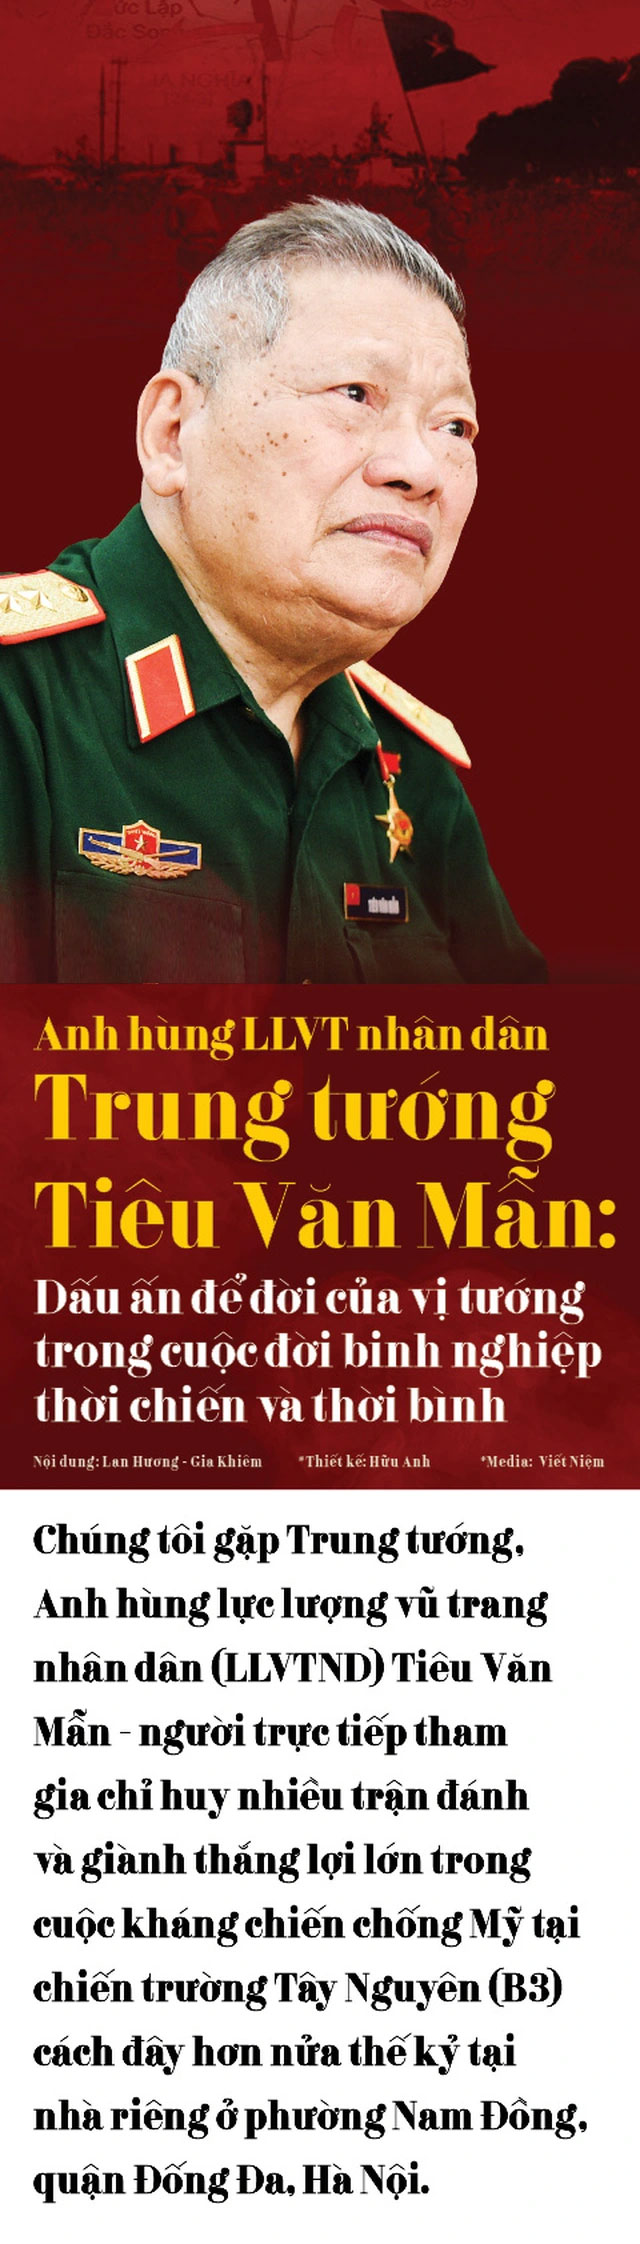 Tiêu Văn Mẫn là sĩ quan cấp cao của Quân đội nhân dân Việt Nam mang quân hàm Trung tướng